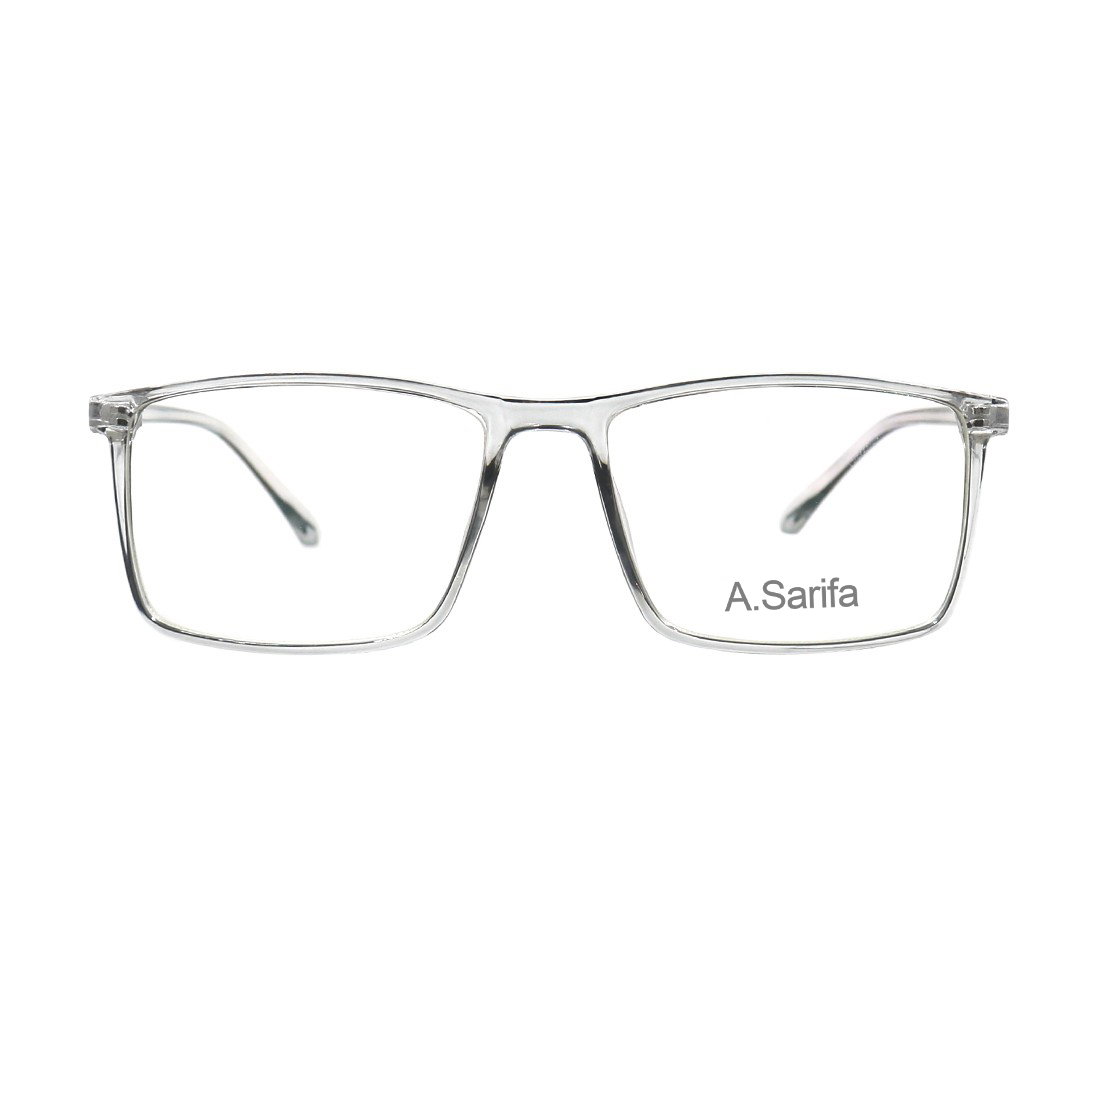 Gọng kính, mắt kính SARIFA 2438 (53-16-148) nhiều màu lựa chọn, thích hợp làm kính cận hoặc kính thời trang